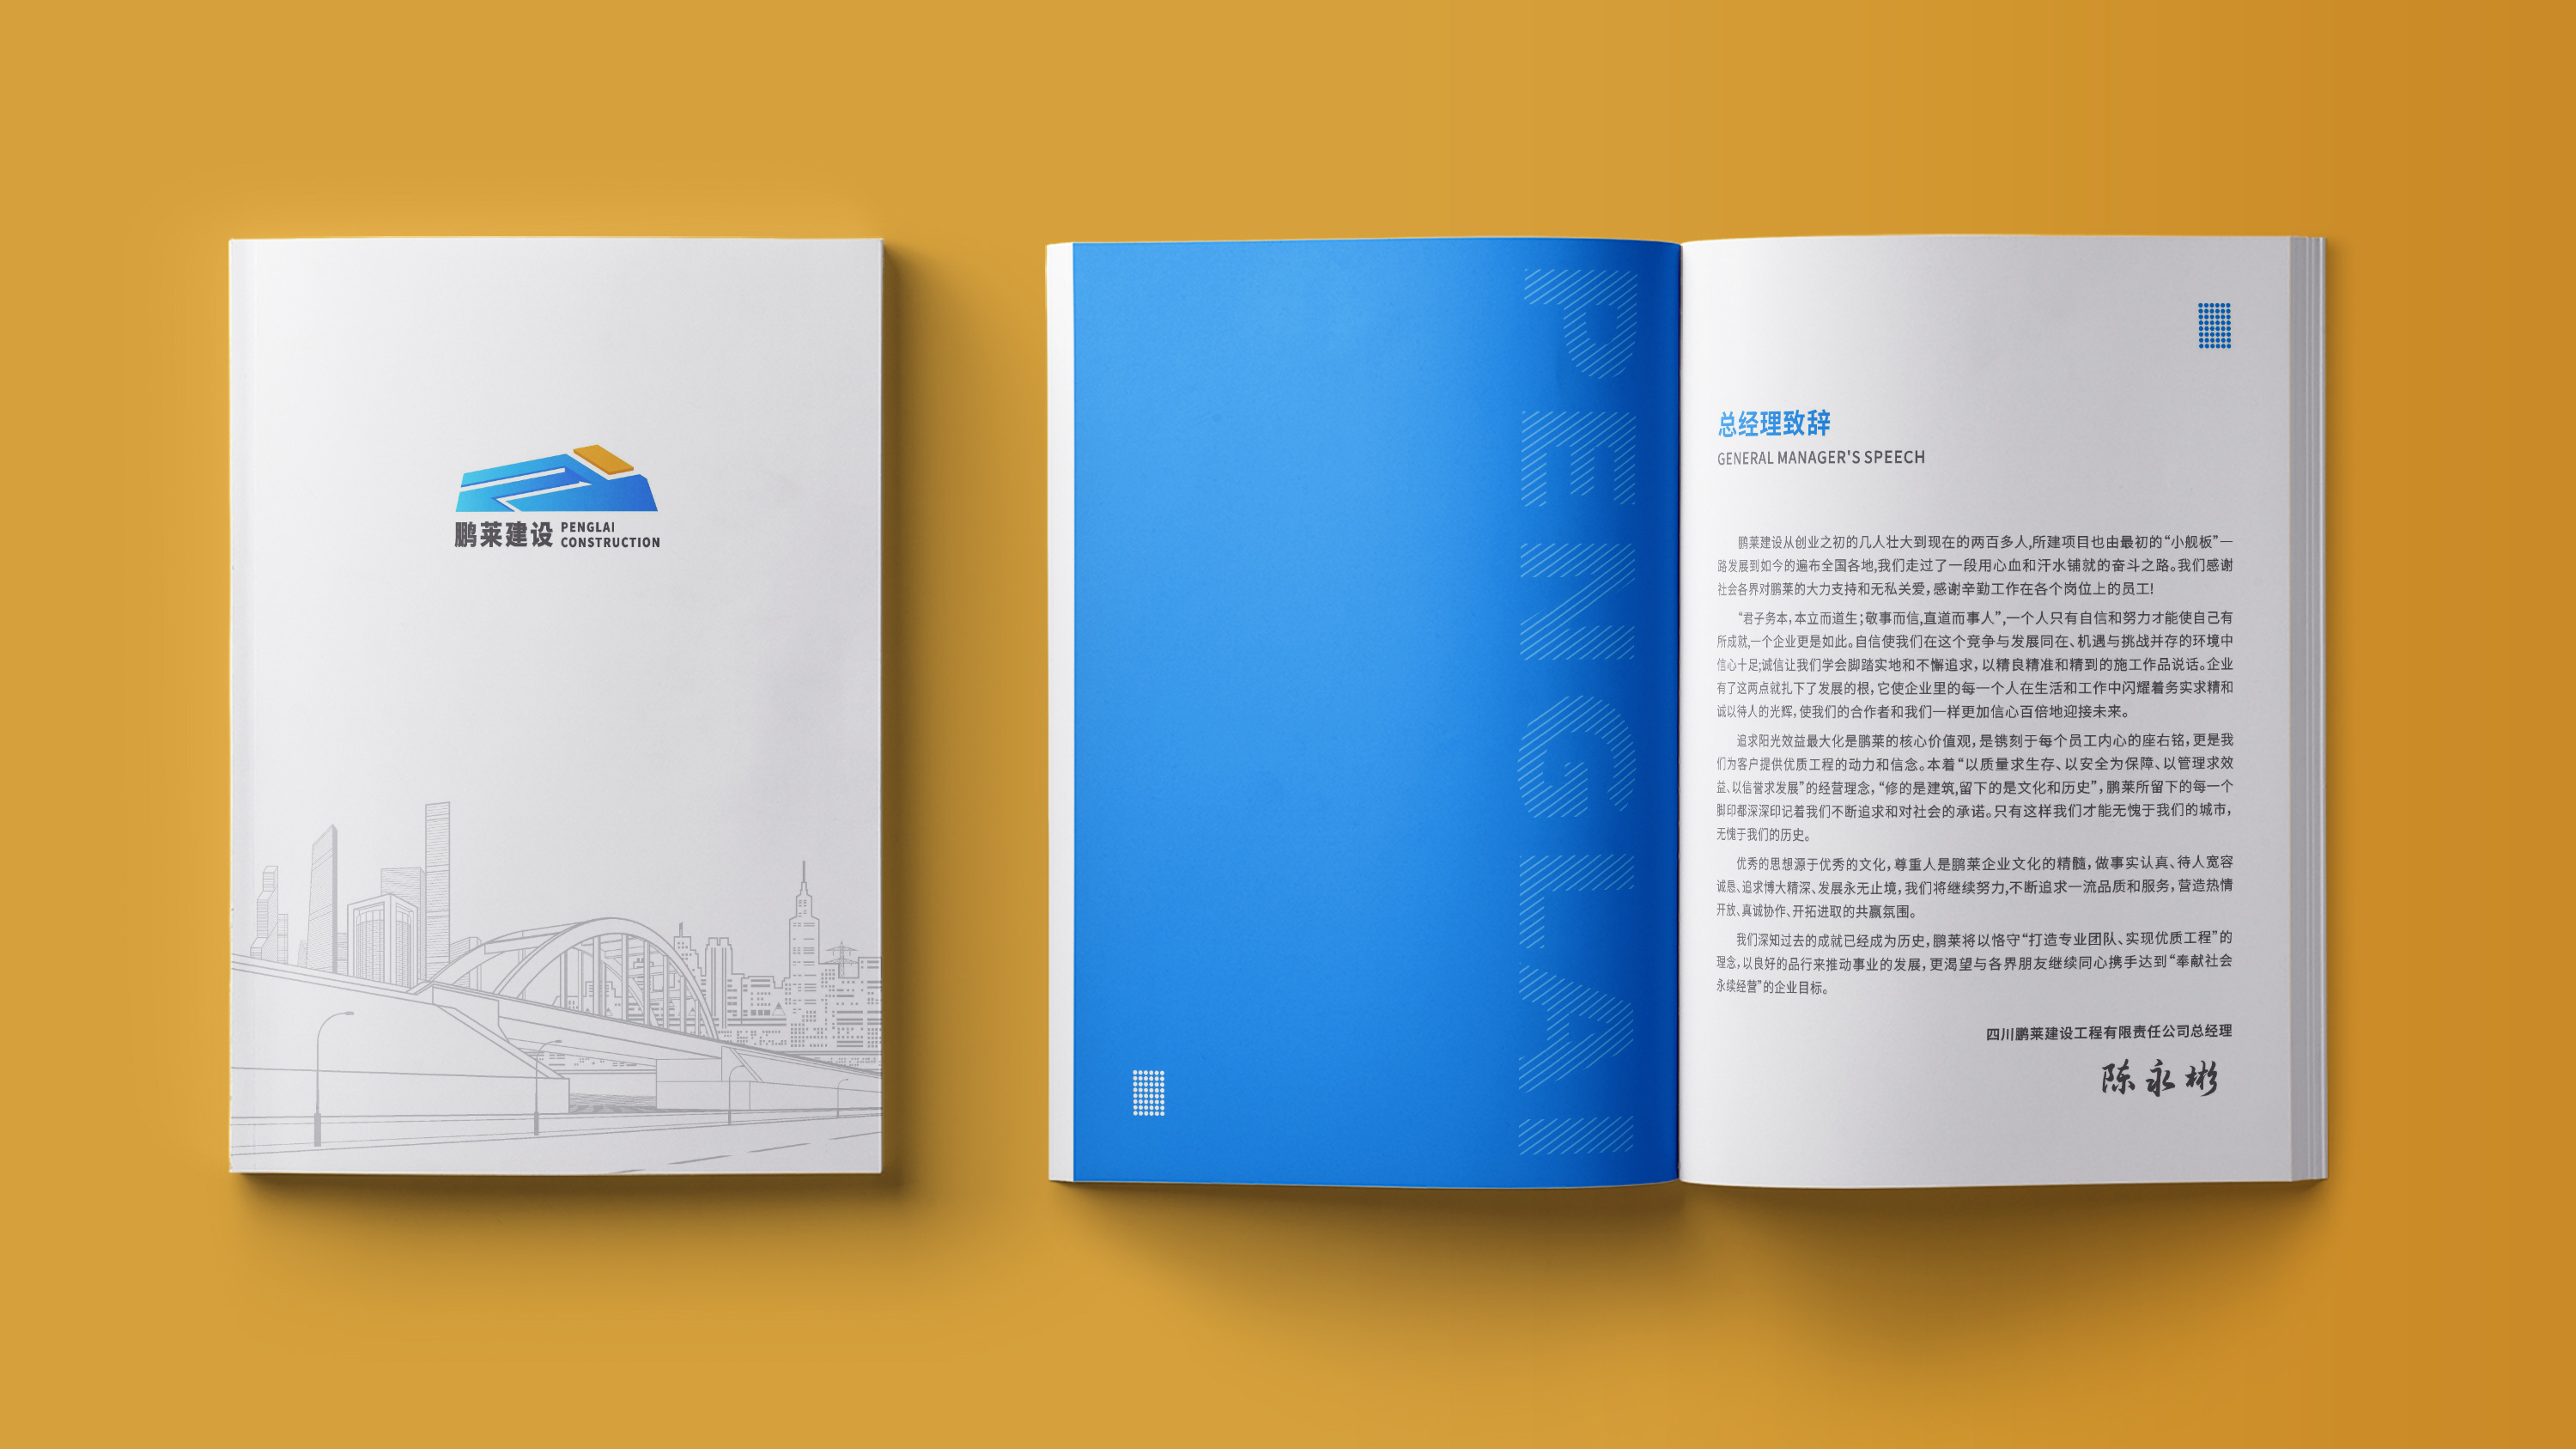 建筑工程宣传画册设计 (1).jpg